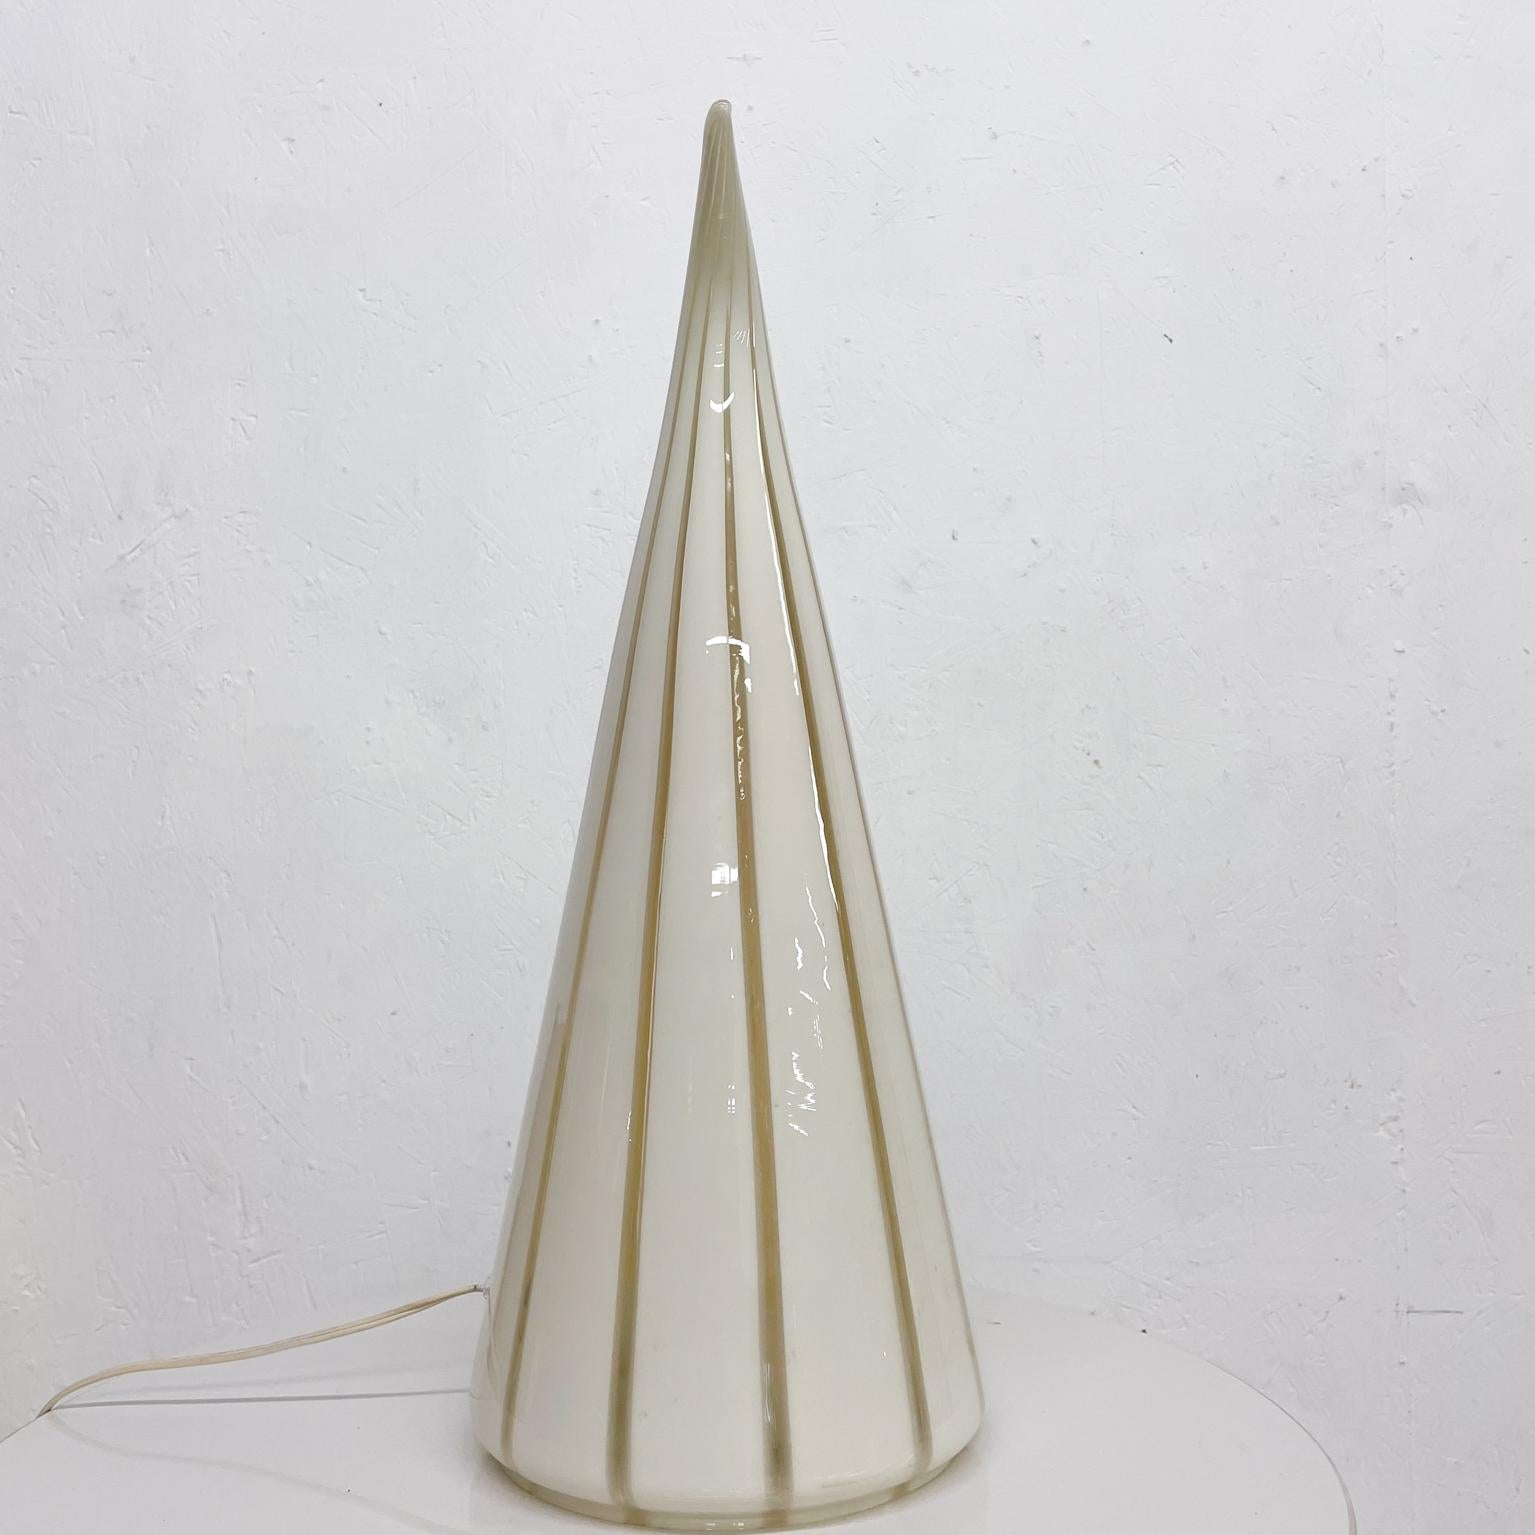 Lampe de table sculpturale en corne de verre soufflé en finesse par Seguso Vetri d'Arte Italie, années 1960
Lampe en forme de corne blanc laiteux avec un joli tourbillon doux. Fournit une lueur chaude, la lumière d'ambiance parfaite !
Aucune